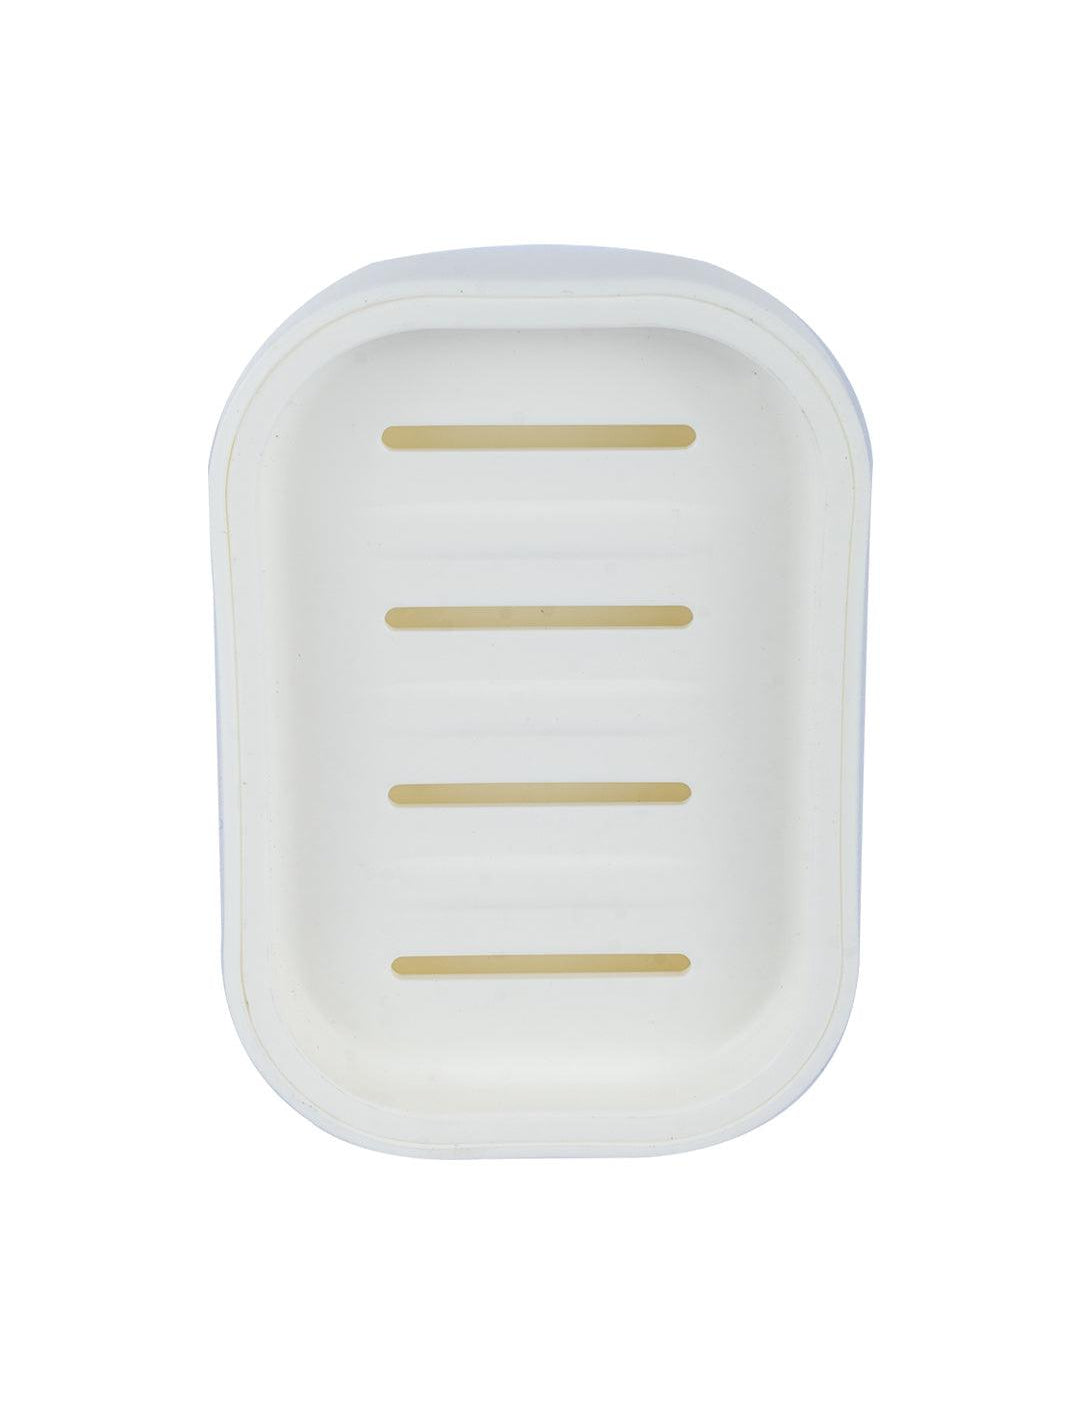 Plastic Soap Case for Bathroom Soap Dish - White